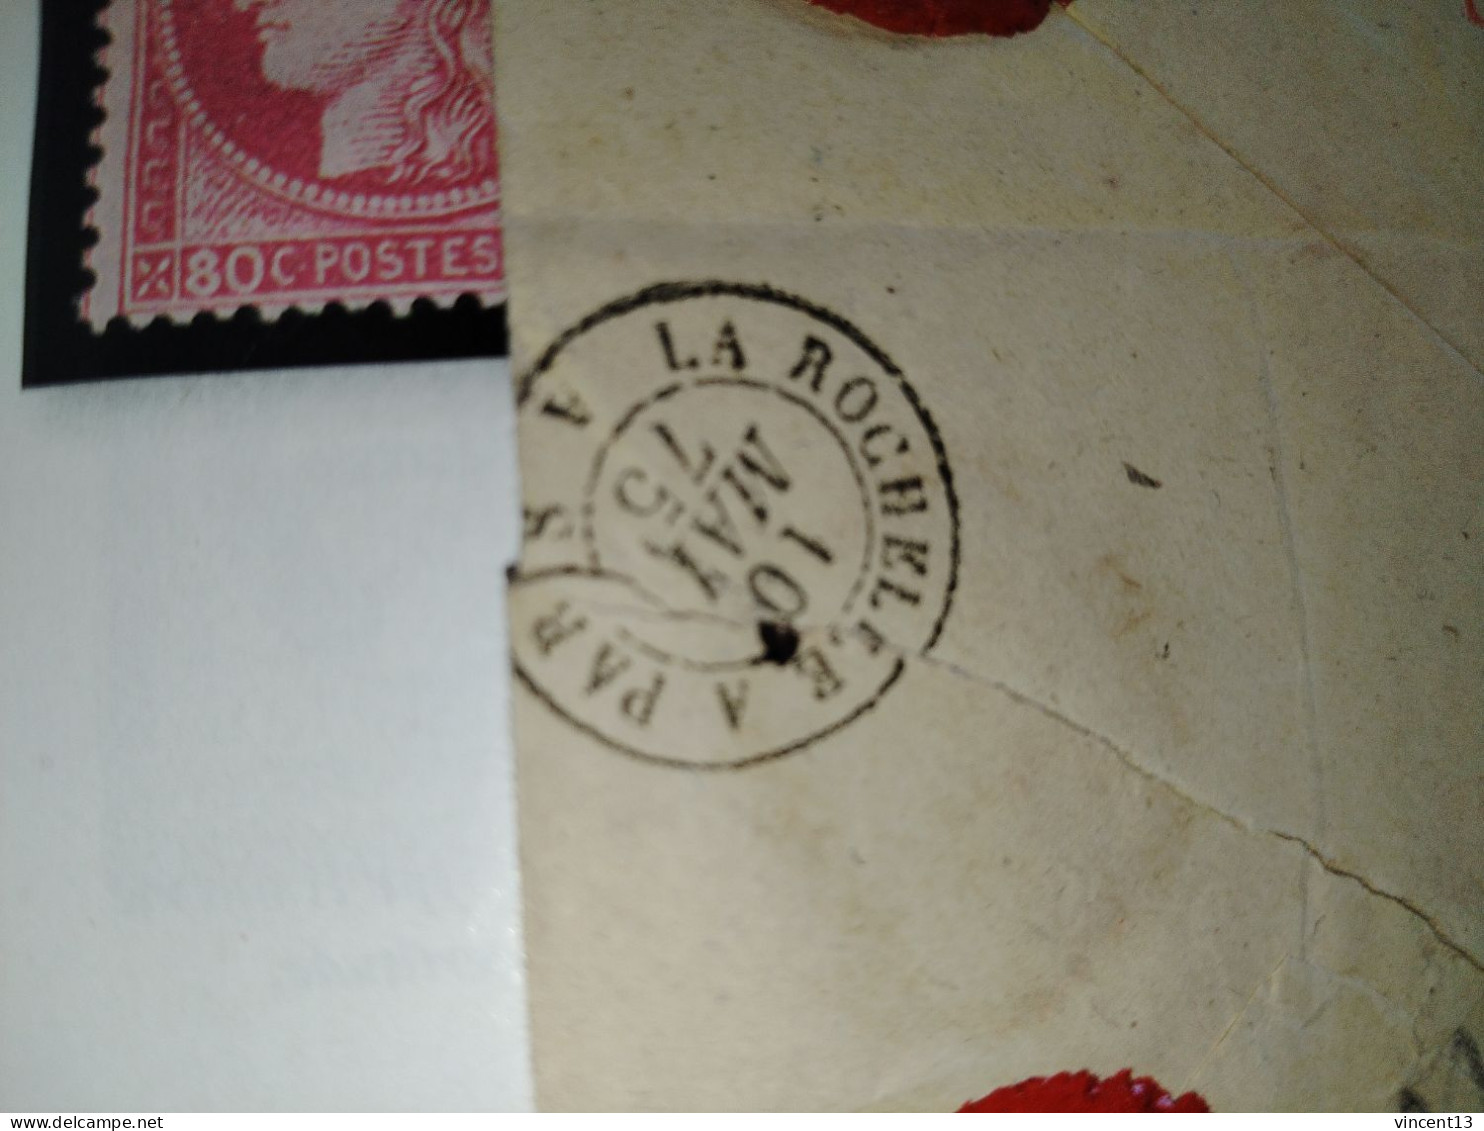 France marcophilie lettre classique chargée valeur 100f